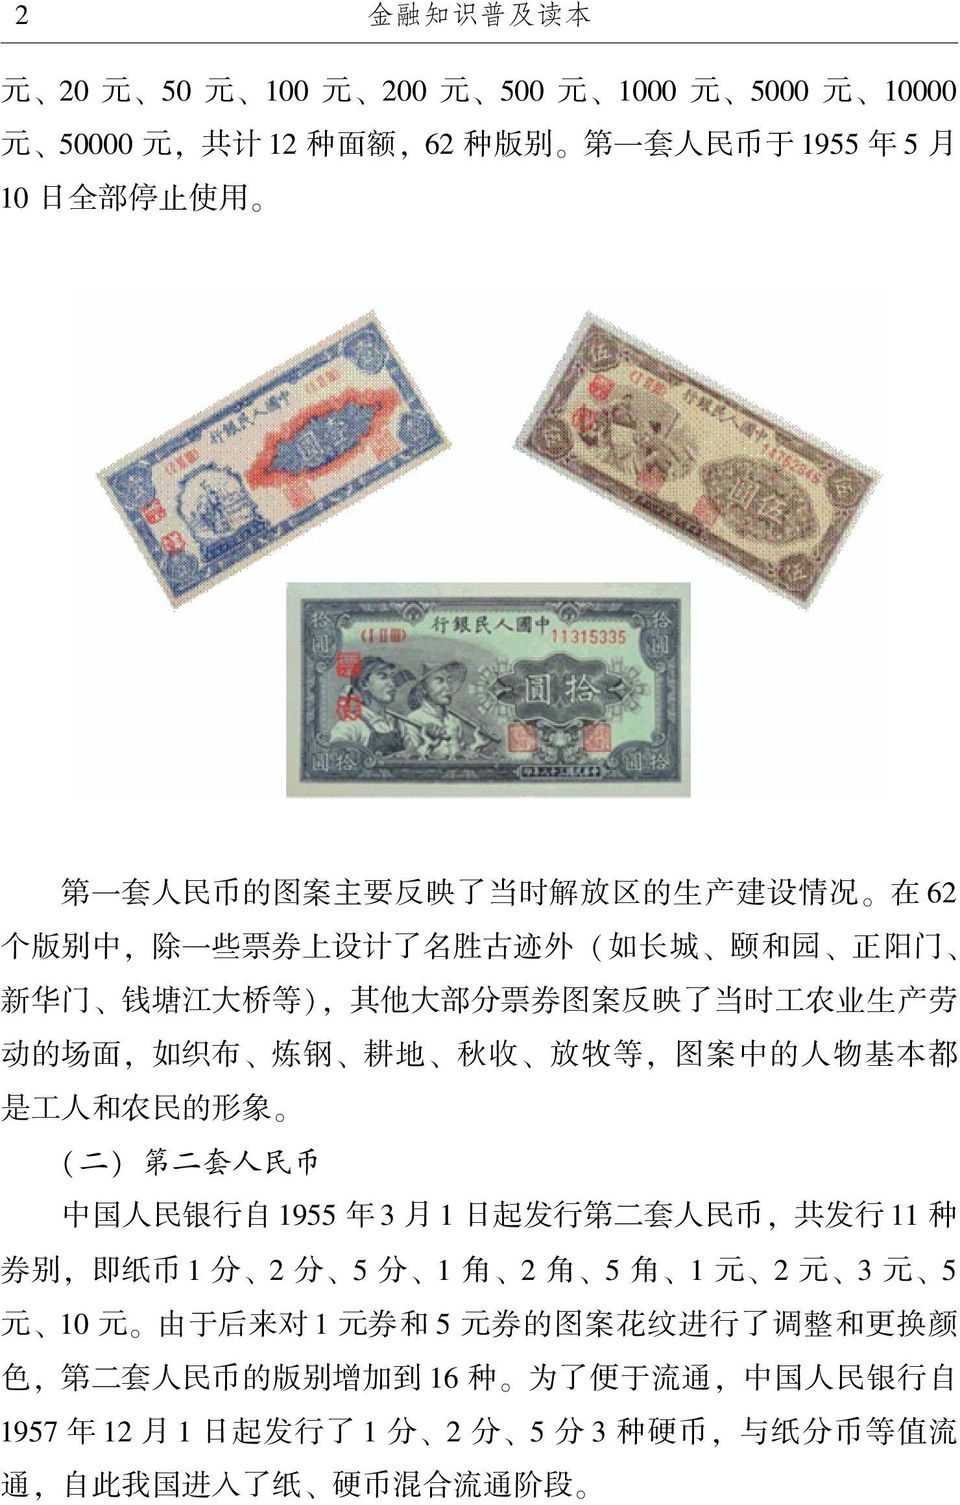 图案中的人物基本都 是工人和农民的形象 ( 二) 第二套人民币 中国人民银行自 1955 年 3 月 1 日起发行第二套人民币, 共发行 11 种 券别, 即纸币 1 分 2 分 5 分 1 角 2 角 5 角 1 元 2 元 3 元 5 元 10 元